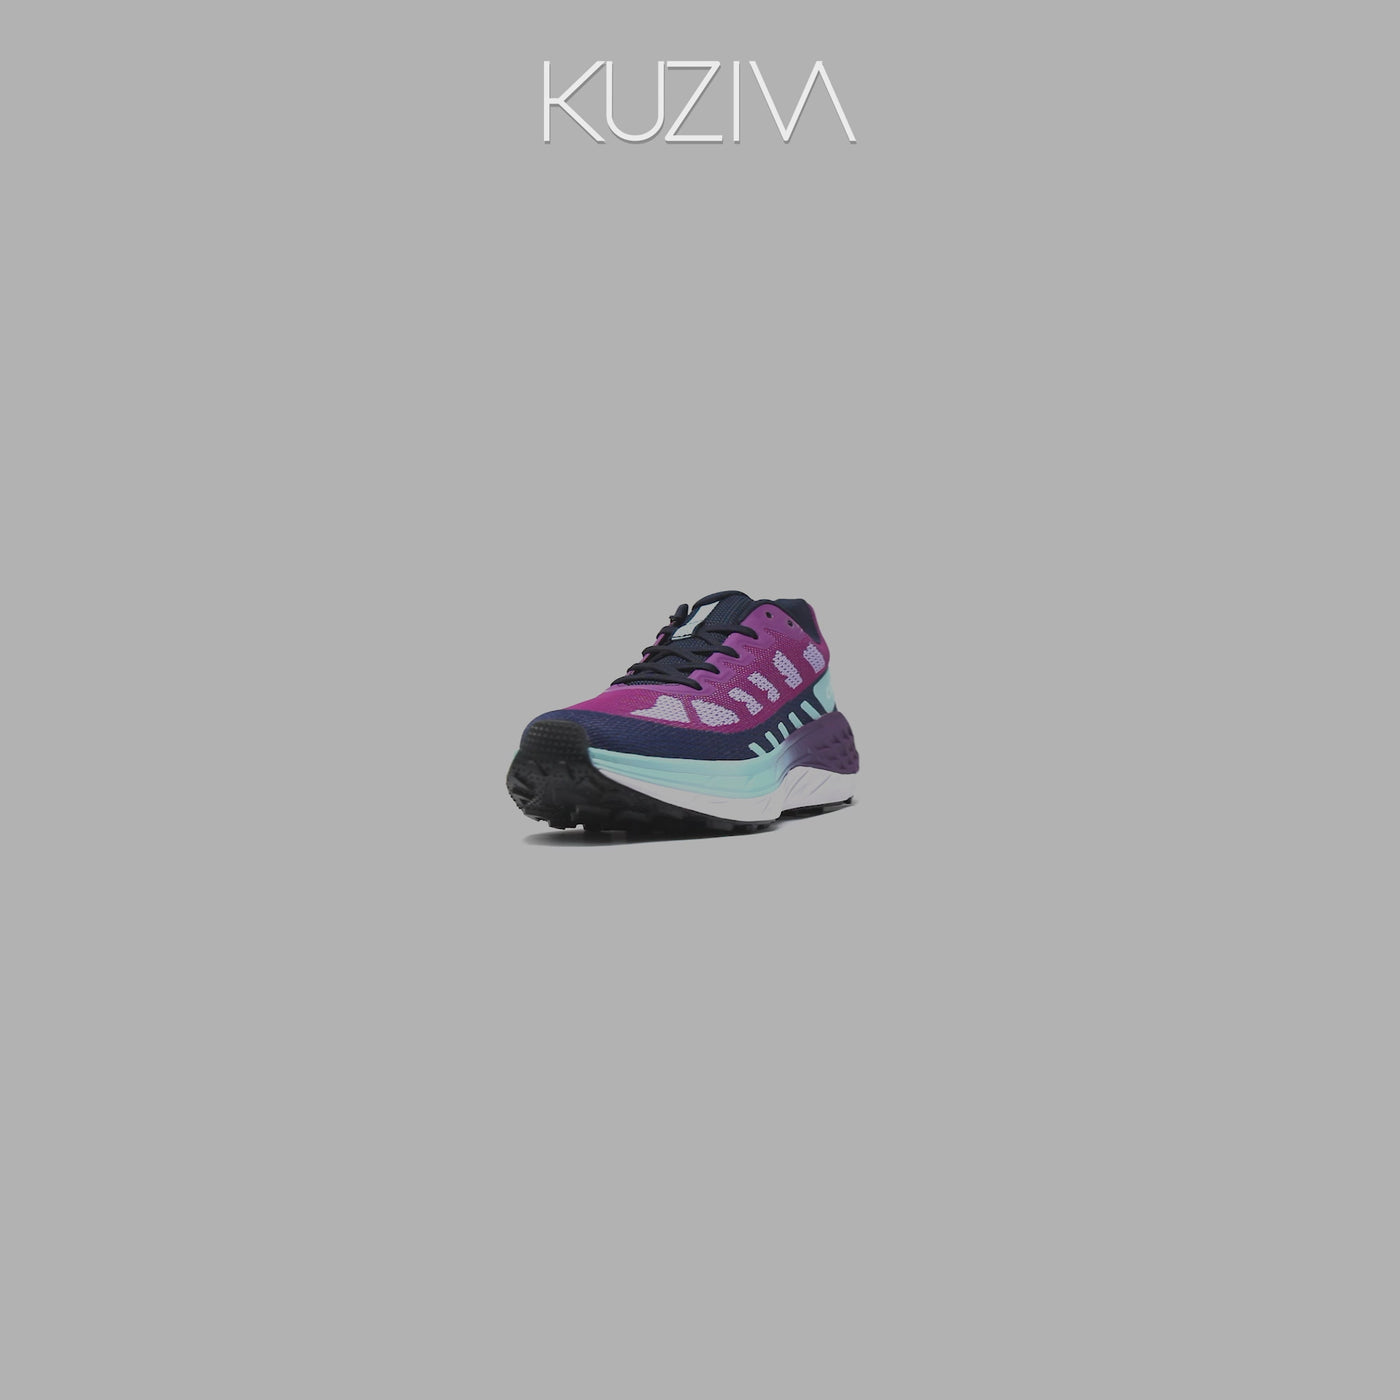 Court | Kuziva